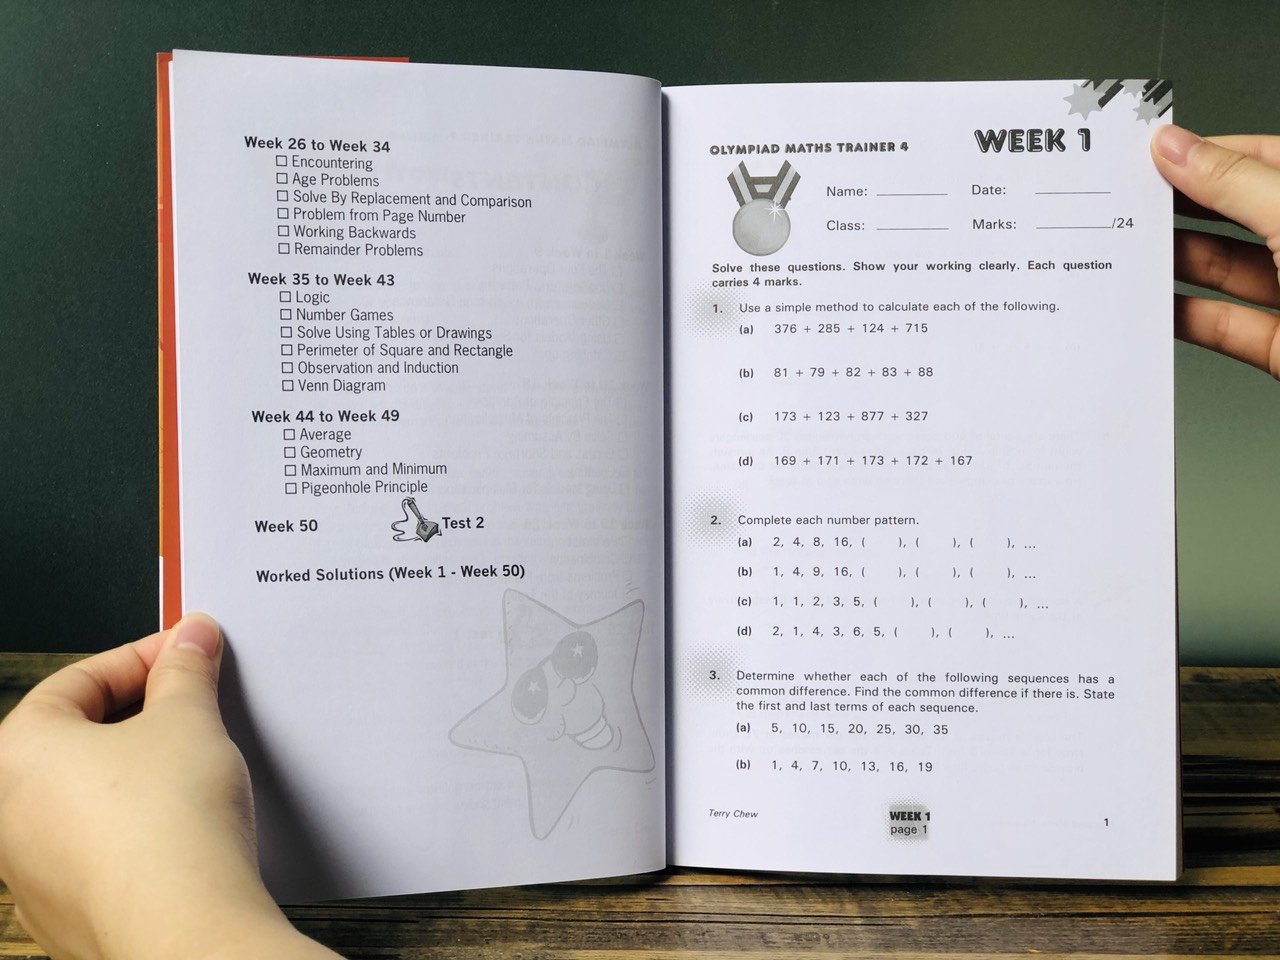 Sách: Olympiad Maths Trainer 4 - Luyện thi olympic toán quốc tế cho trẻ 9-10 tuổi - á Châu Books